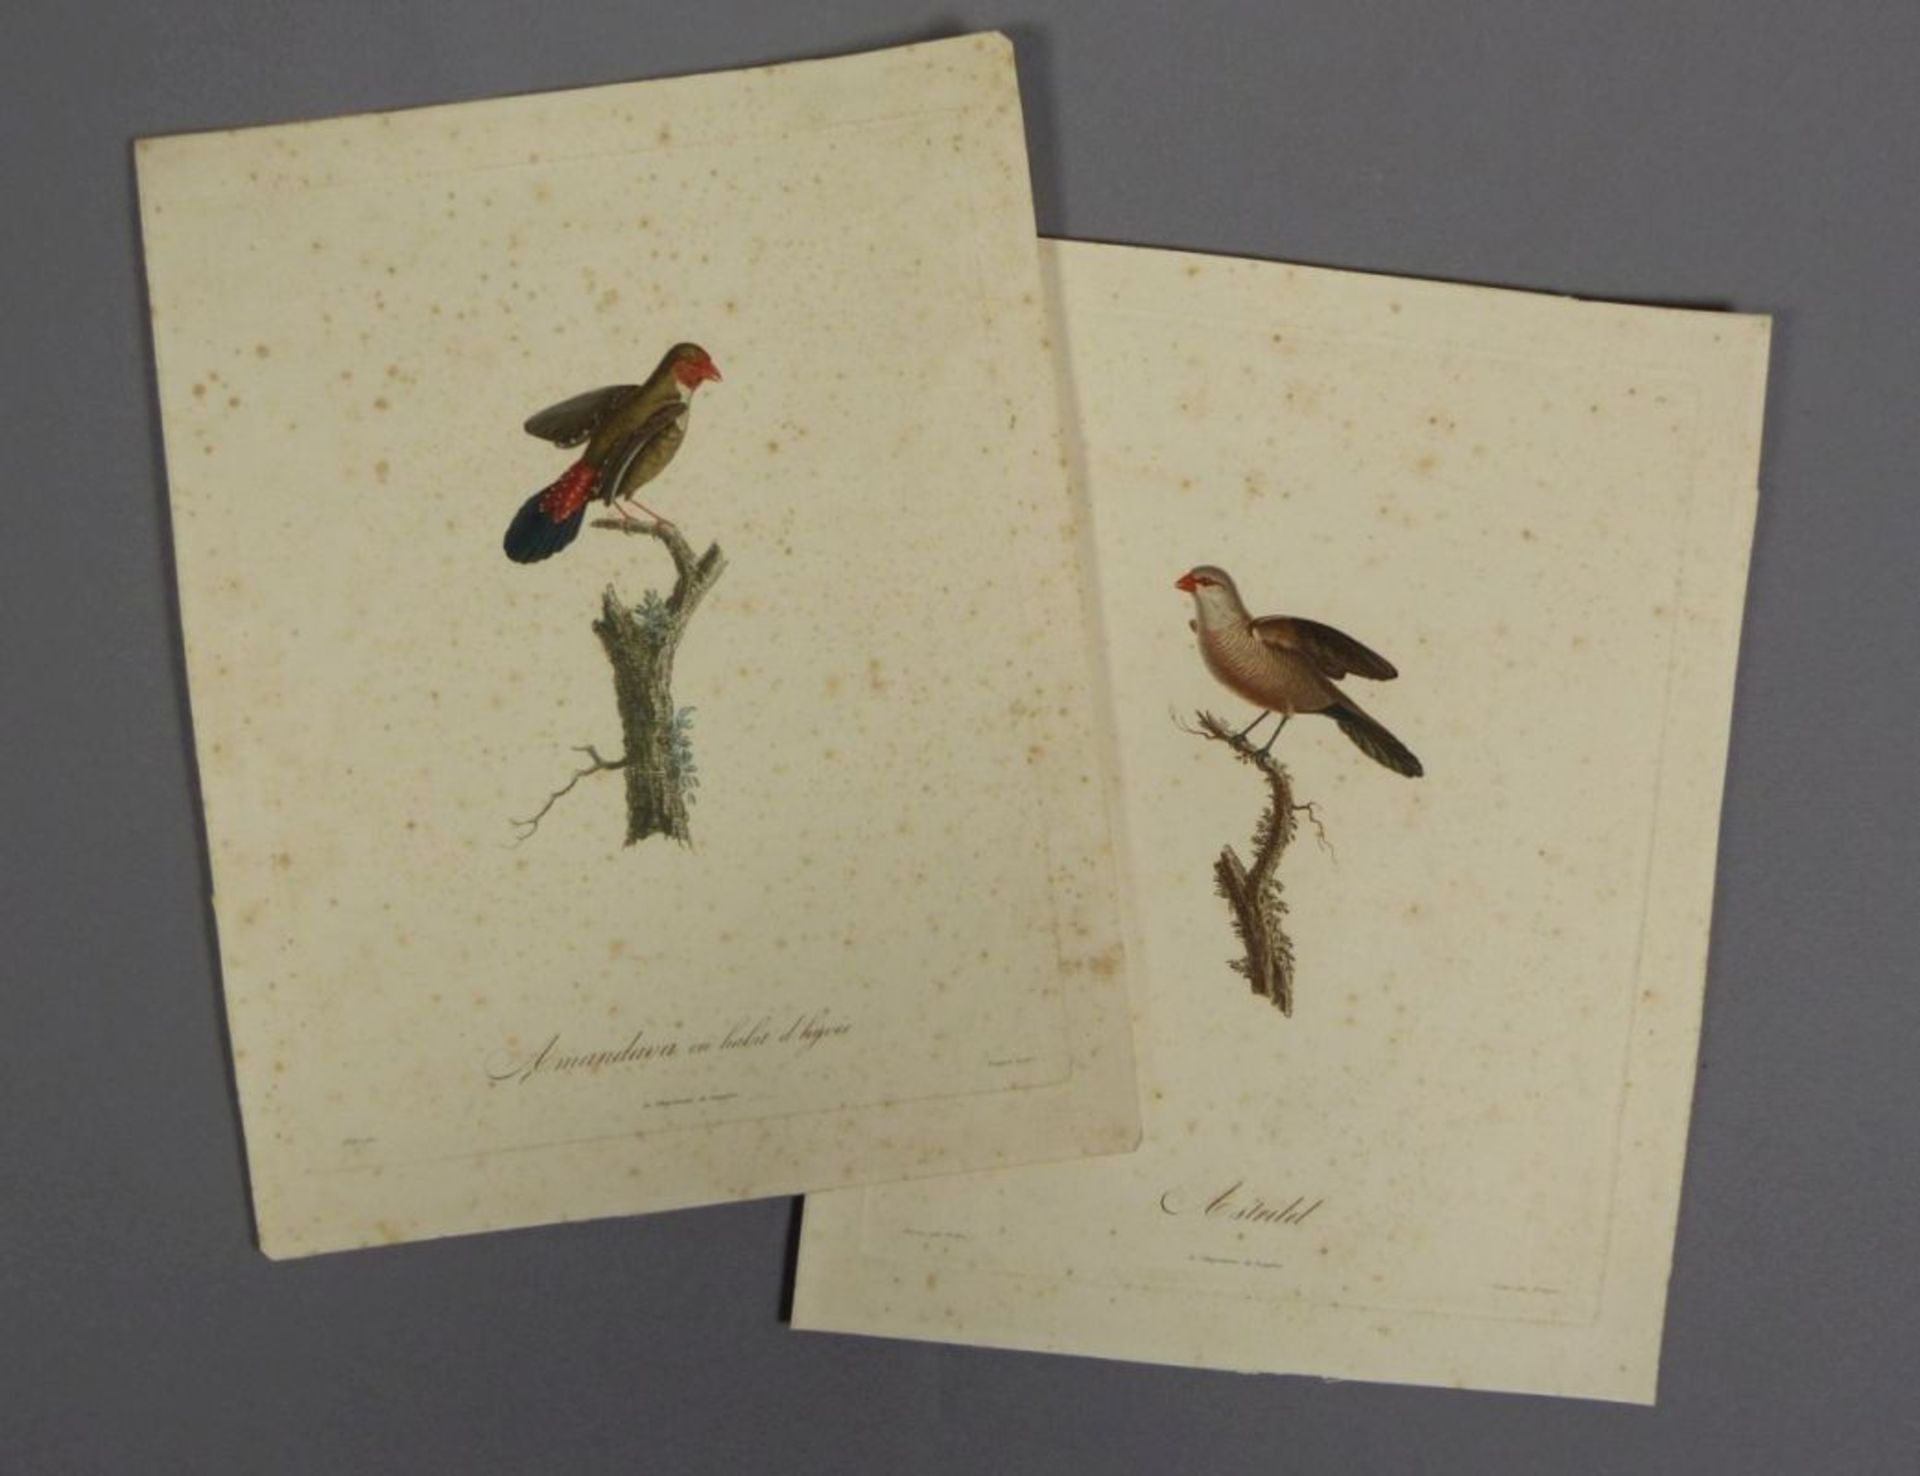 Bouquet, LouisZwei Vogeldarstellungen(Gizancourt 1765-1814 Paris) Aus einer ornithologischen